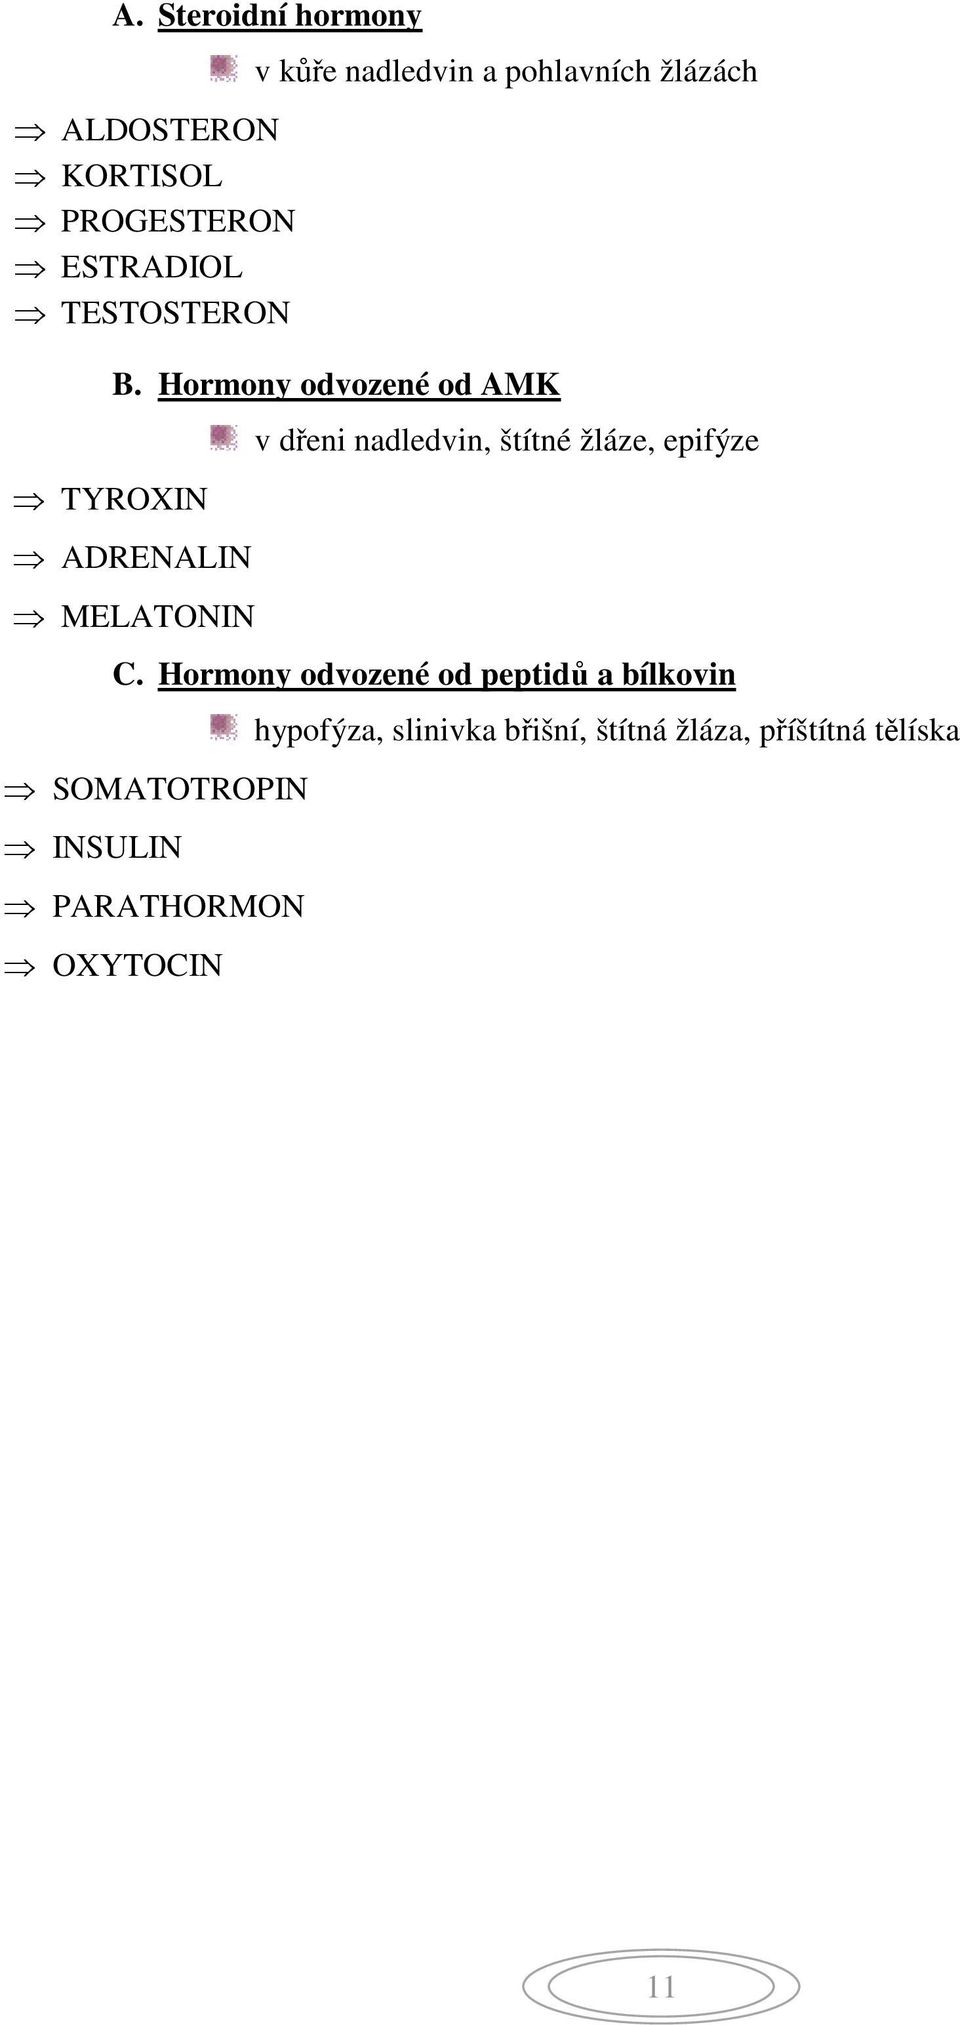 Hormony odvozené od AMK ADRENALIN MELATONIN v dřeni nadledvin, štítné žláze, epifýze C.